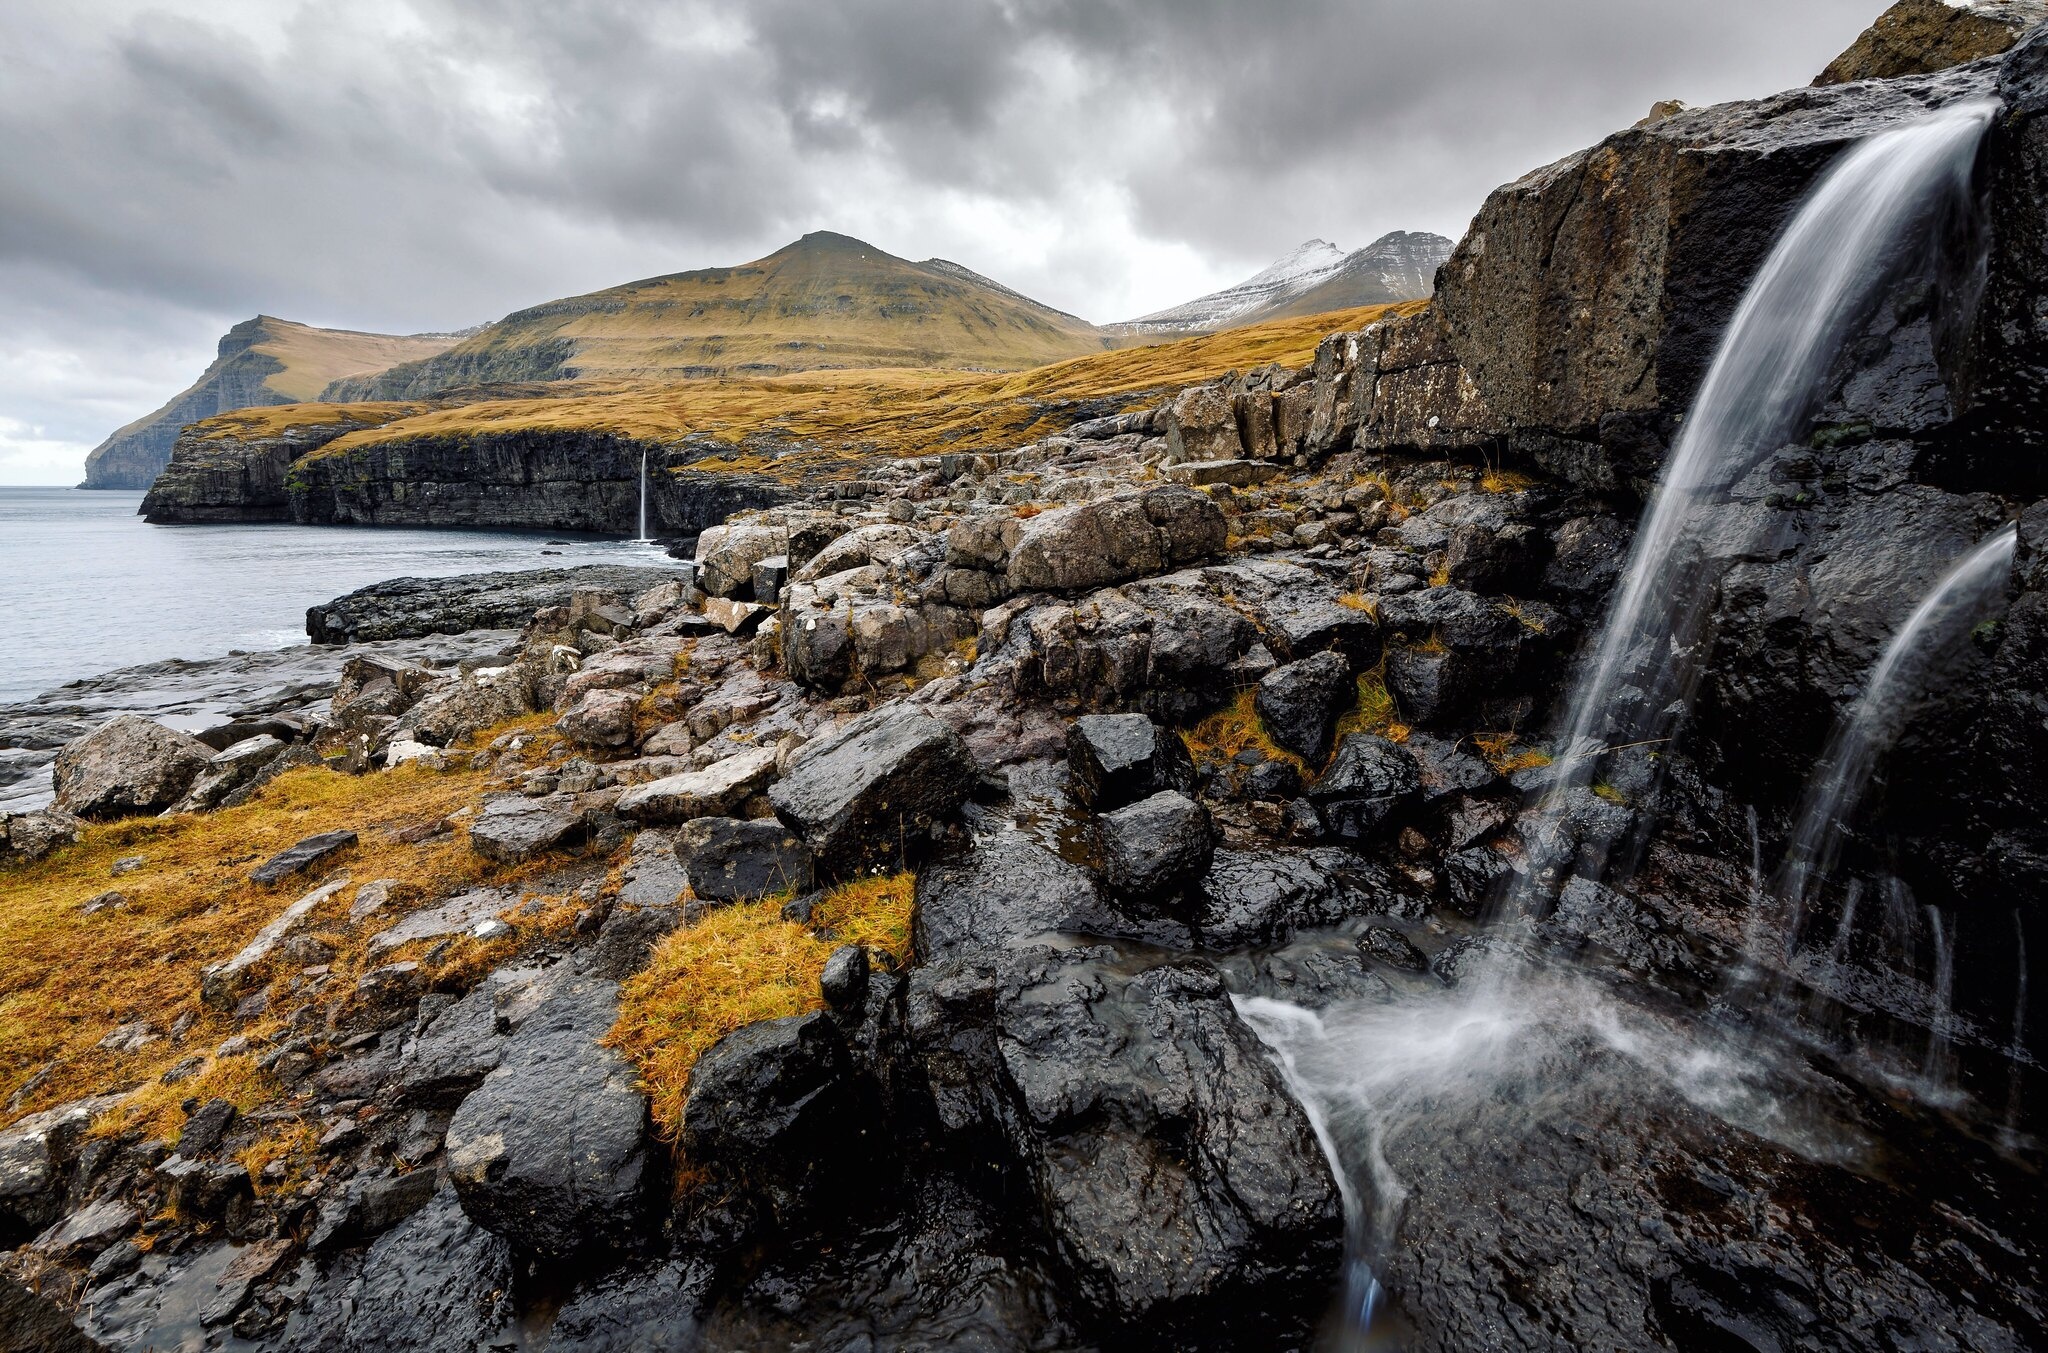 vodopad-poberezhe-skaly-farerskie-ostrova.jpg